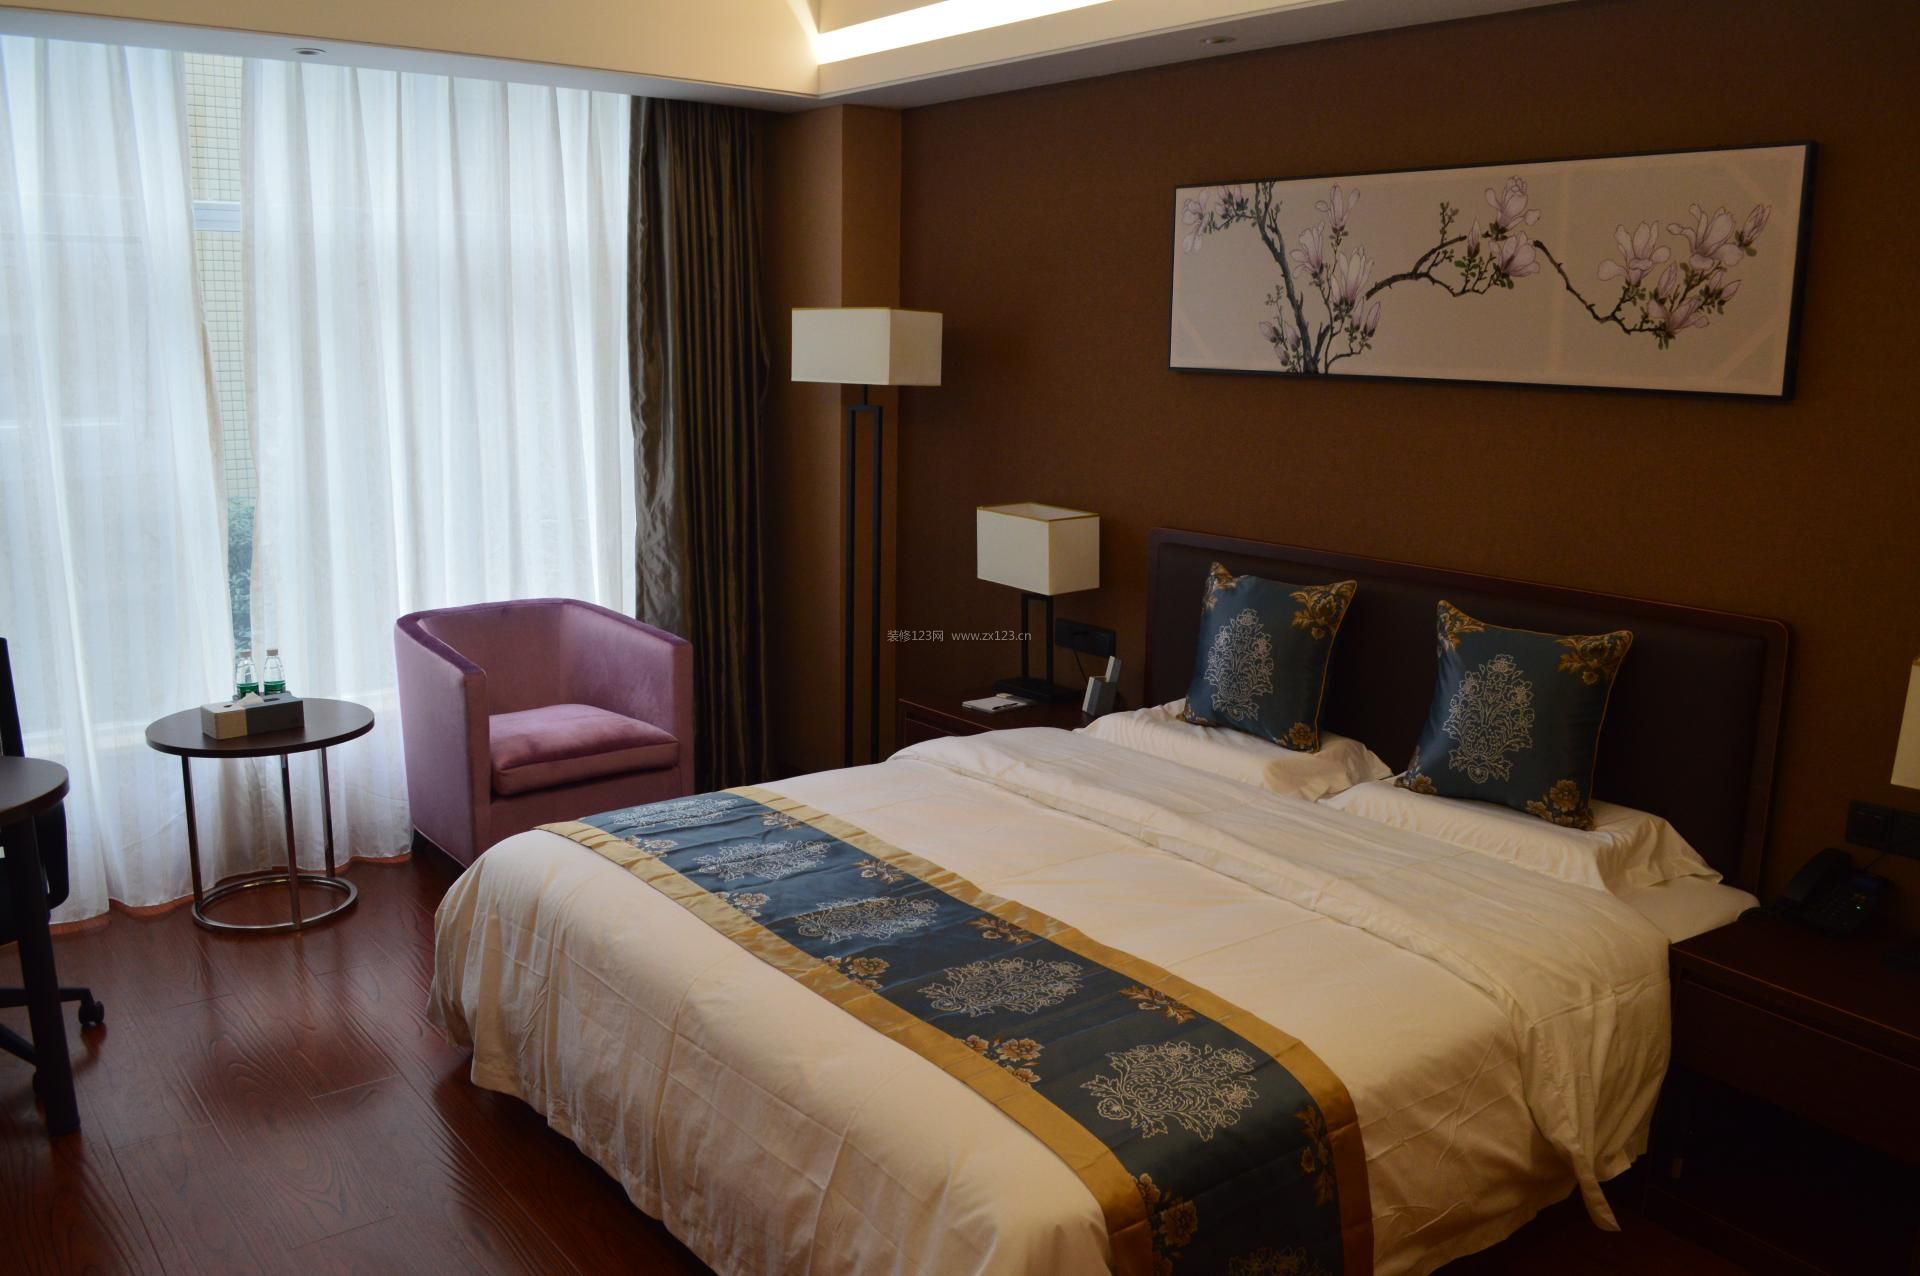 中式酒店客房装修效果图 高档酒店客房图片